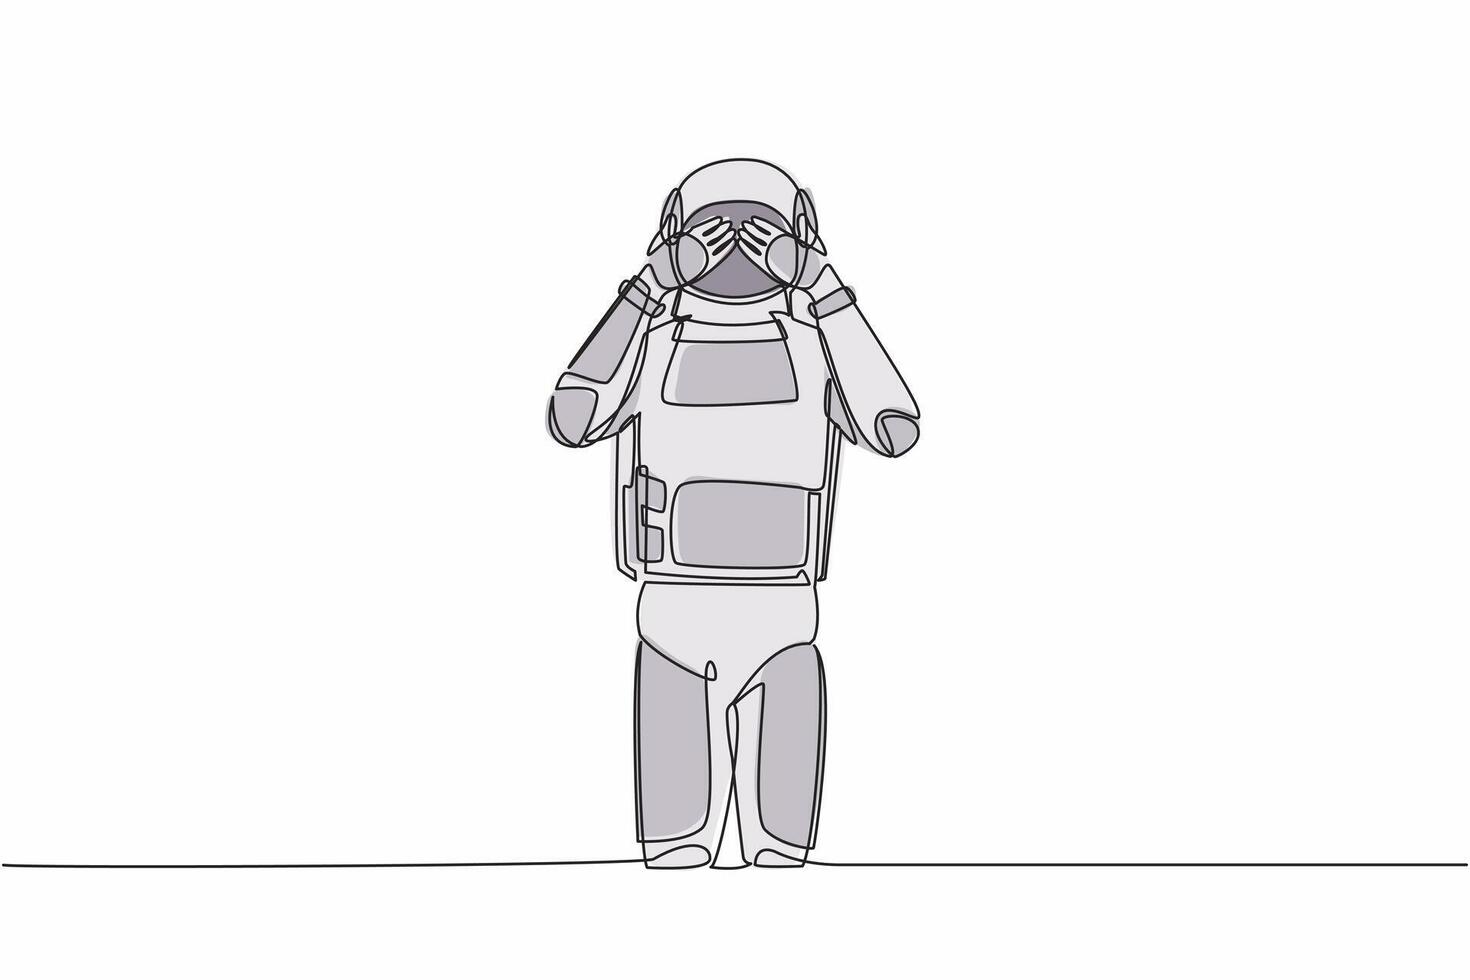 Single einer Linie Zeichnung Astronaut Stehen mit Abdeckung seine Augen mit Hände weil von der Ekel und Widerwillen zu sehen etwas. kosmisch Galaxis Raum. kontinuierlich Linie Grafik Design Vektor Illustration